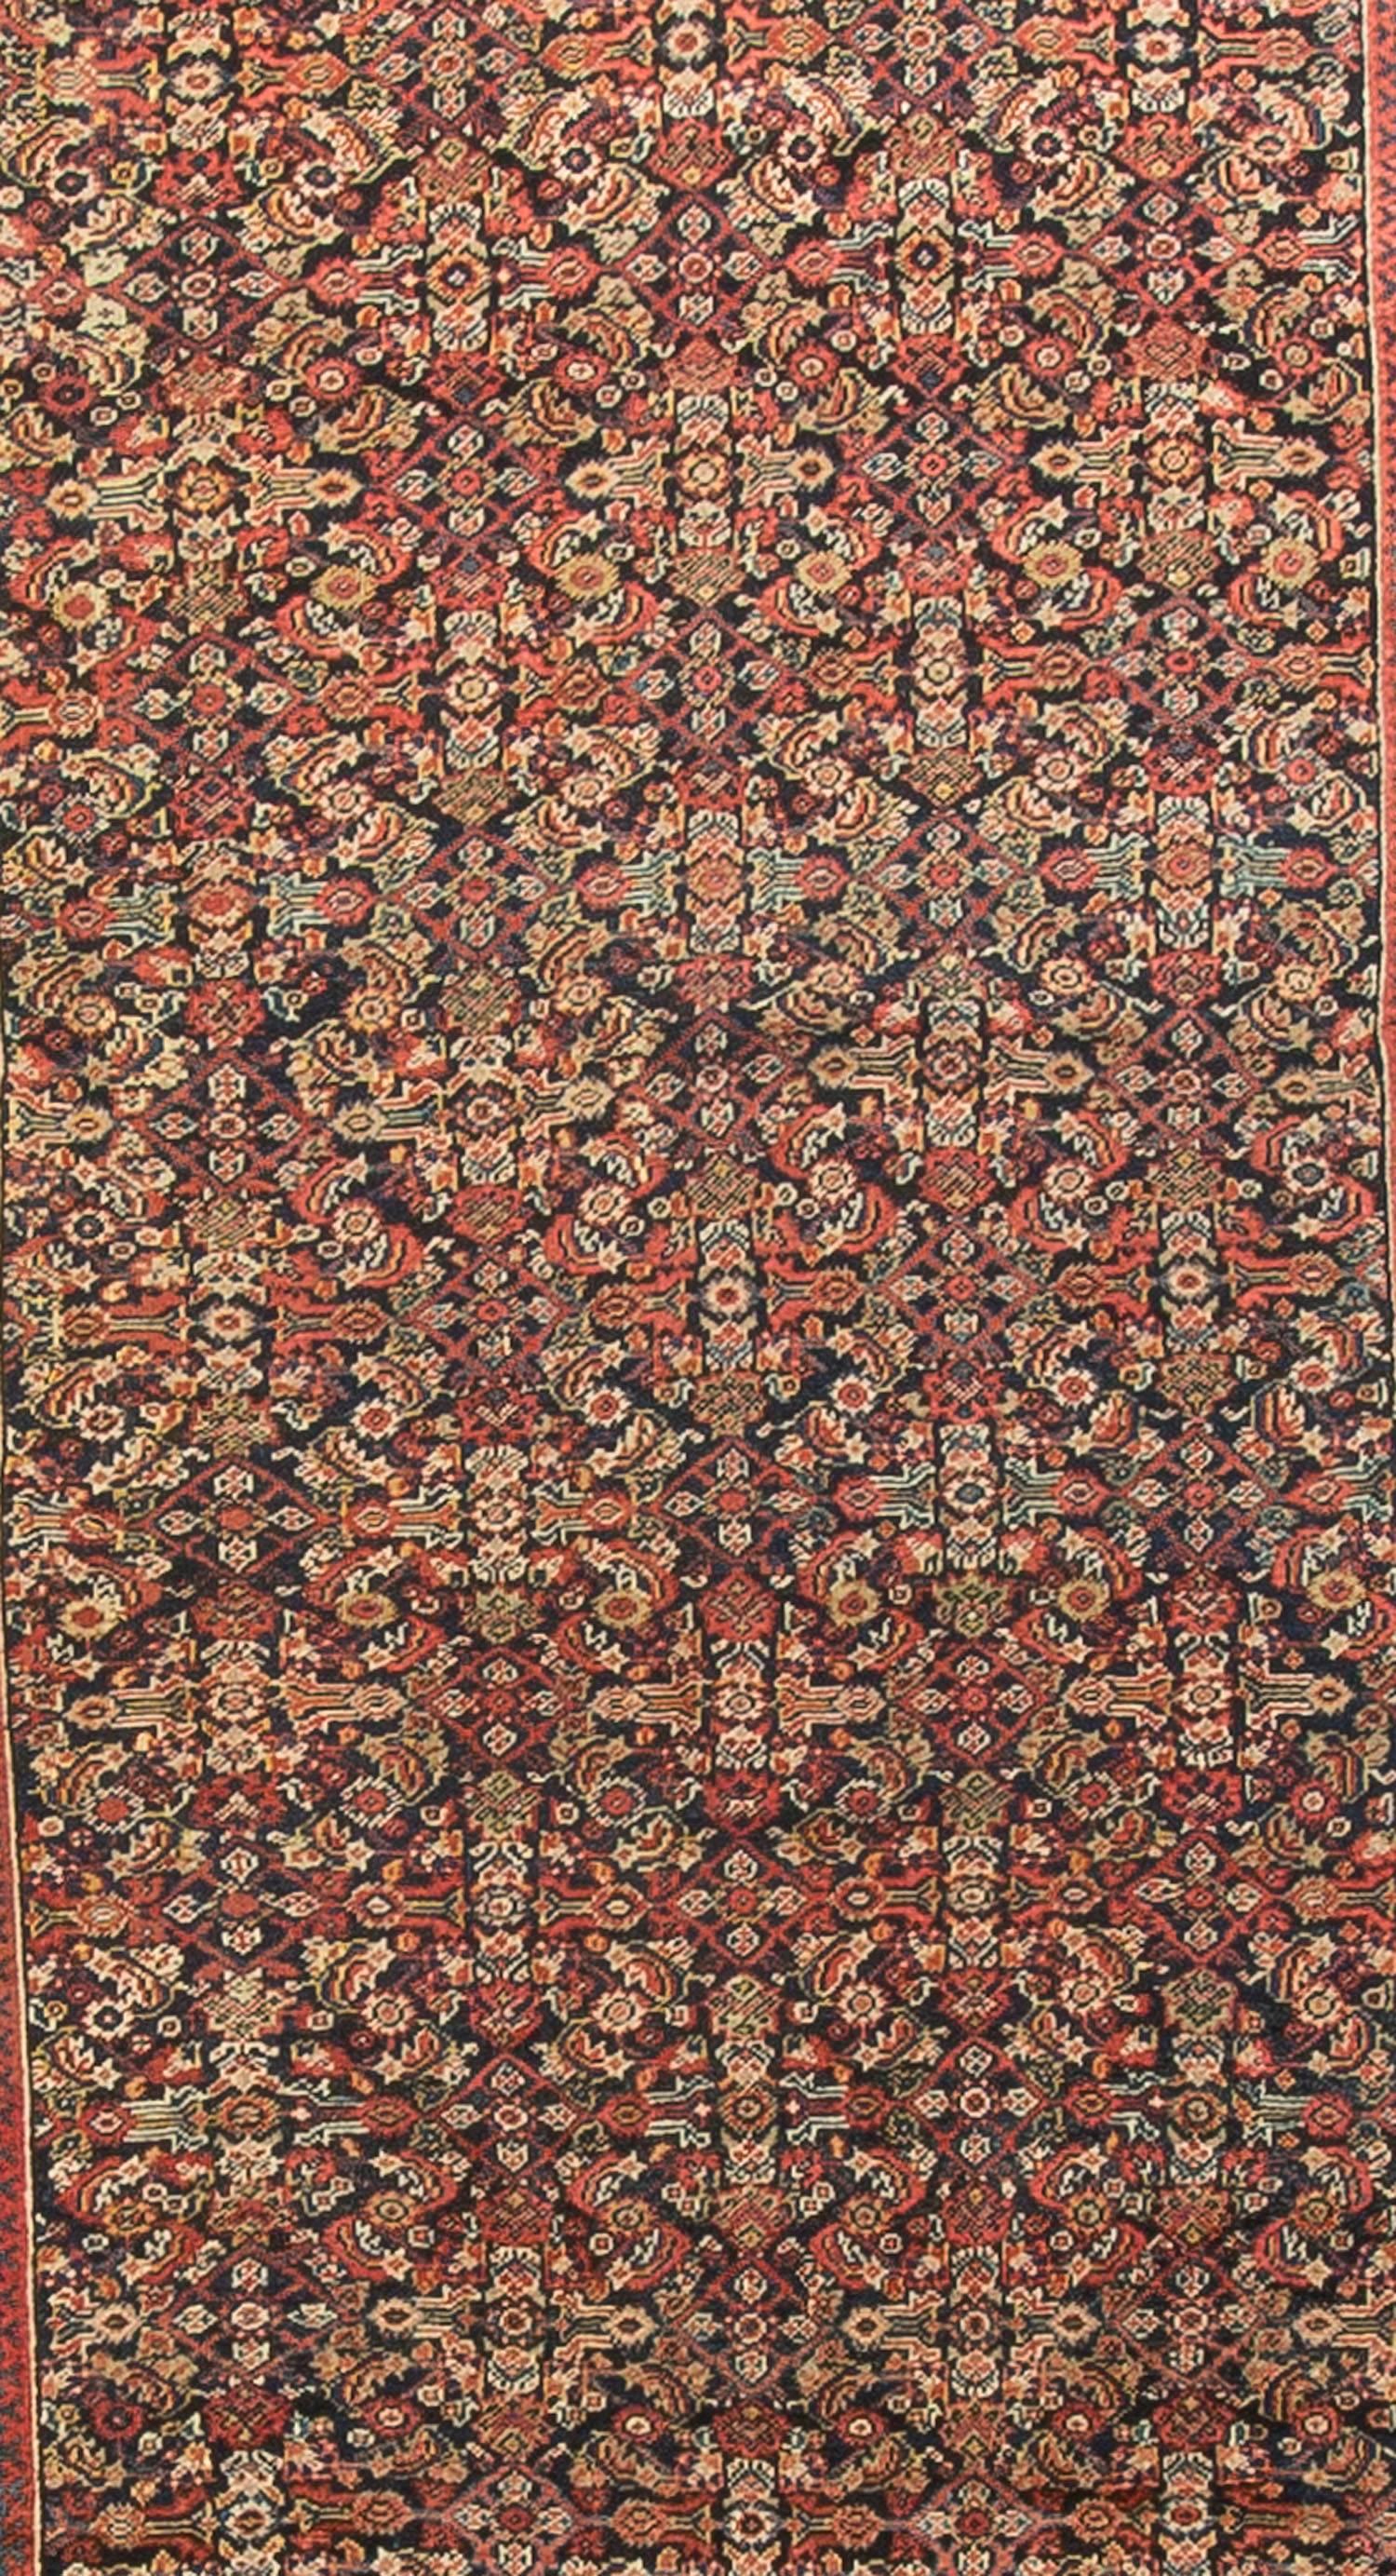 Situé dans la province de Markazi, dans l'ouest de la Perse, le district de Feraghan a tissé une variété de styles et de textures, de qualité bonne à vraiment exceptionnelle, à partir du 18e siècle. Les plus reconnaissables sont les tapis de galerie